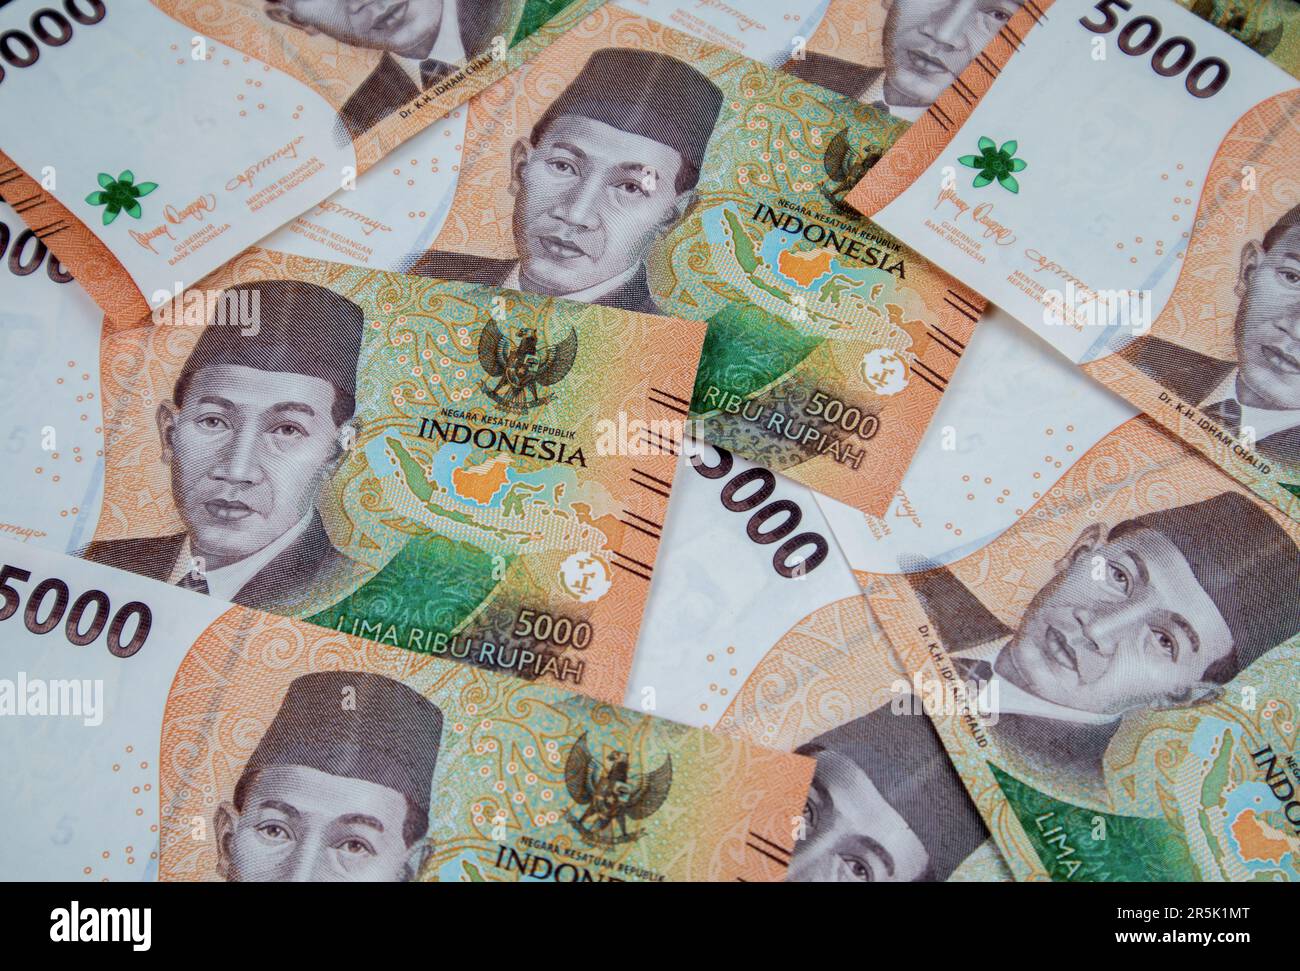 5,000 rupiah, una nuova serie di banconote di rupiah. Valuta di rupiah dall'Indonesia come mezzo di pagamento per beni e servizi. Foto Stock